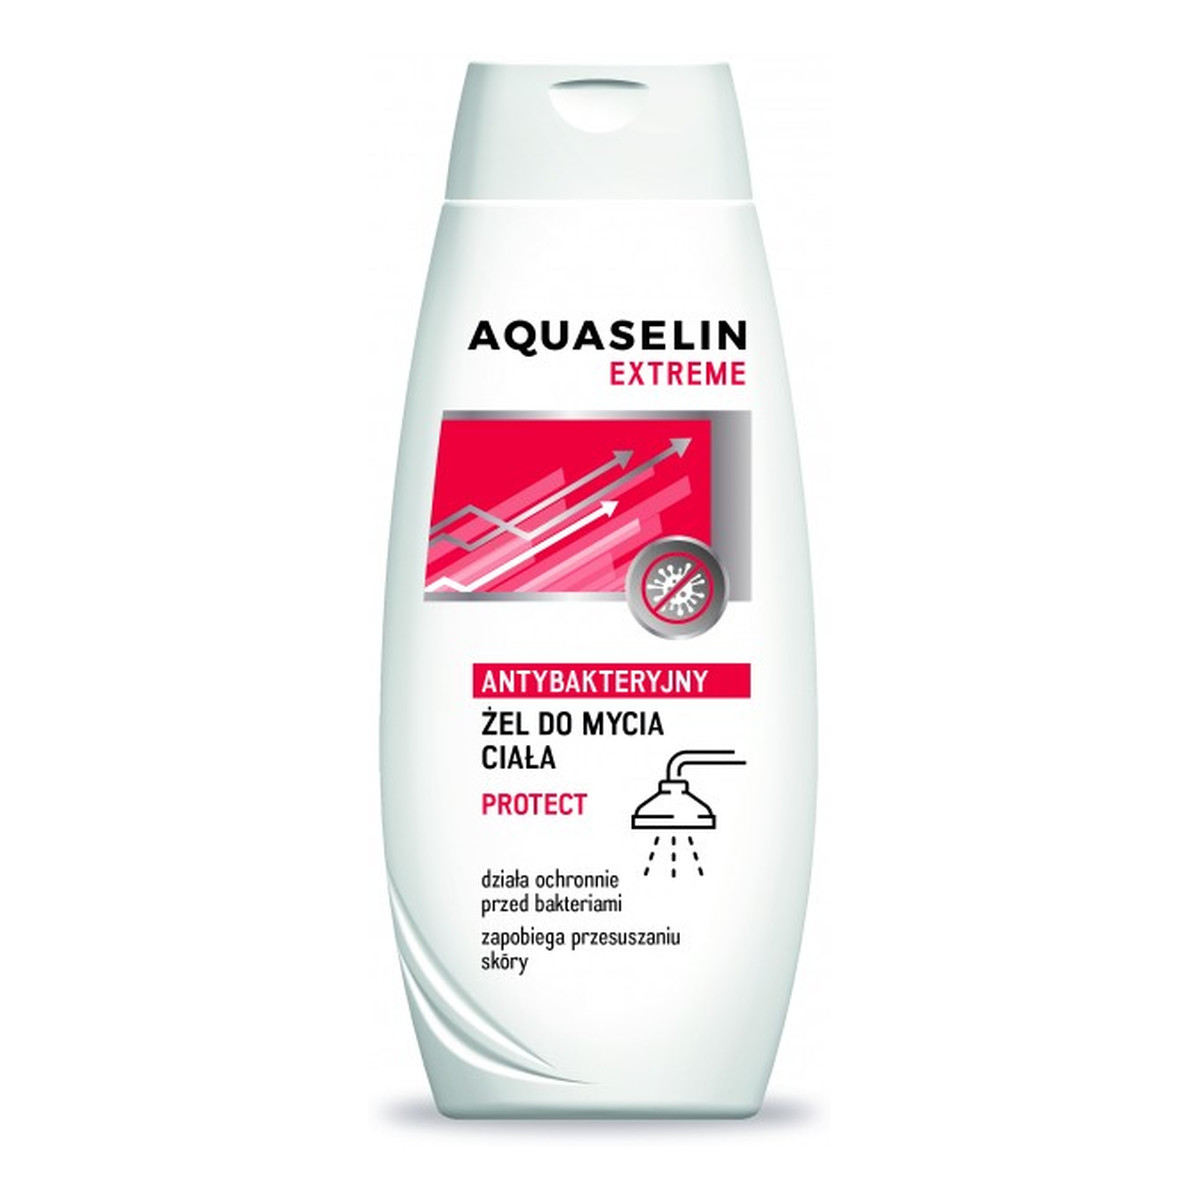 AA Aquaselin Extreme Antybakteryjny Żel do mycia ciała Protect 400ml